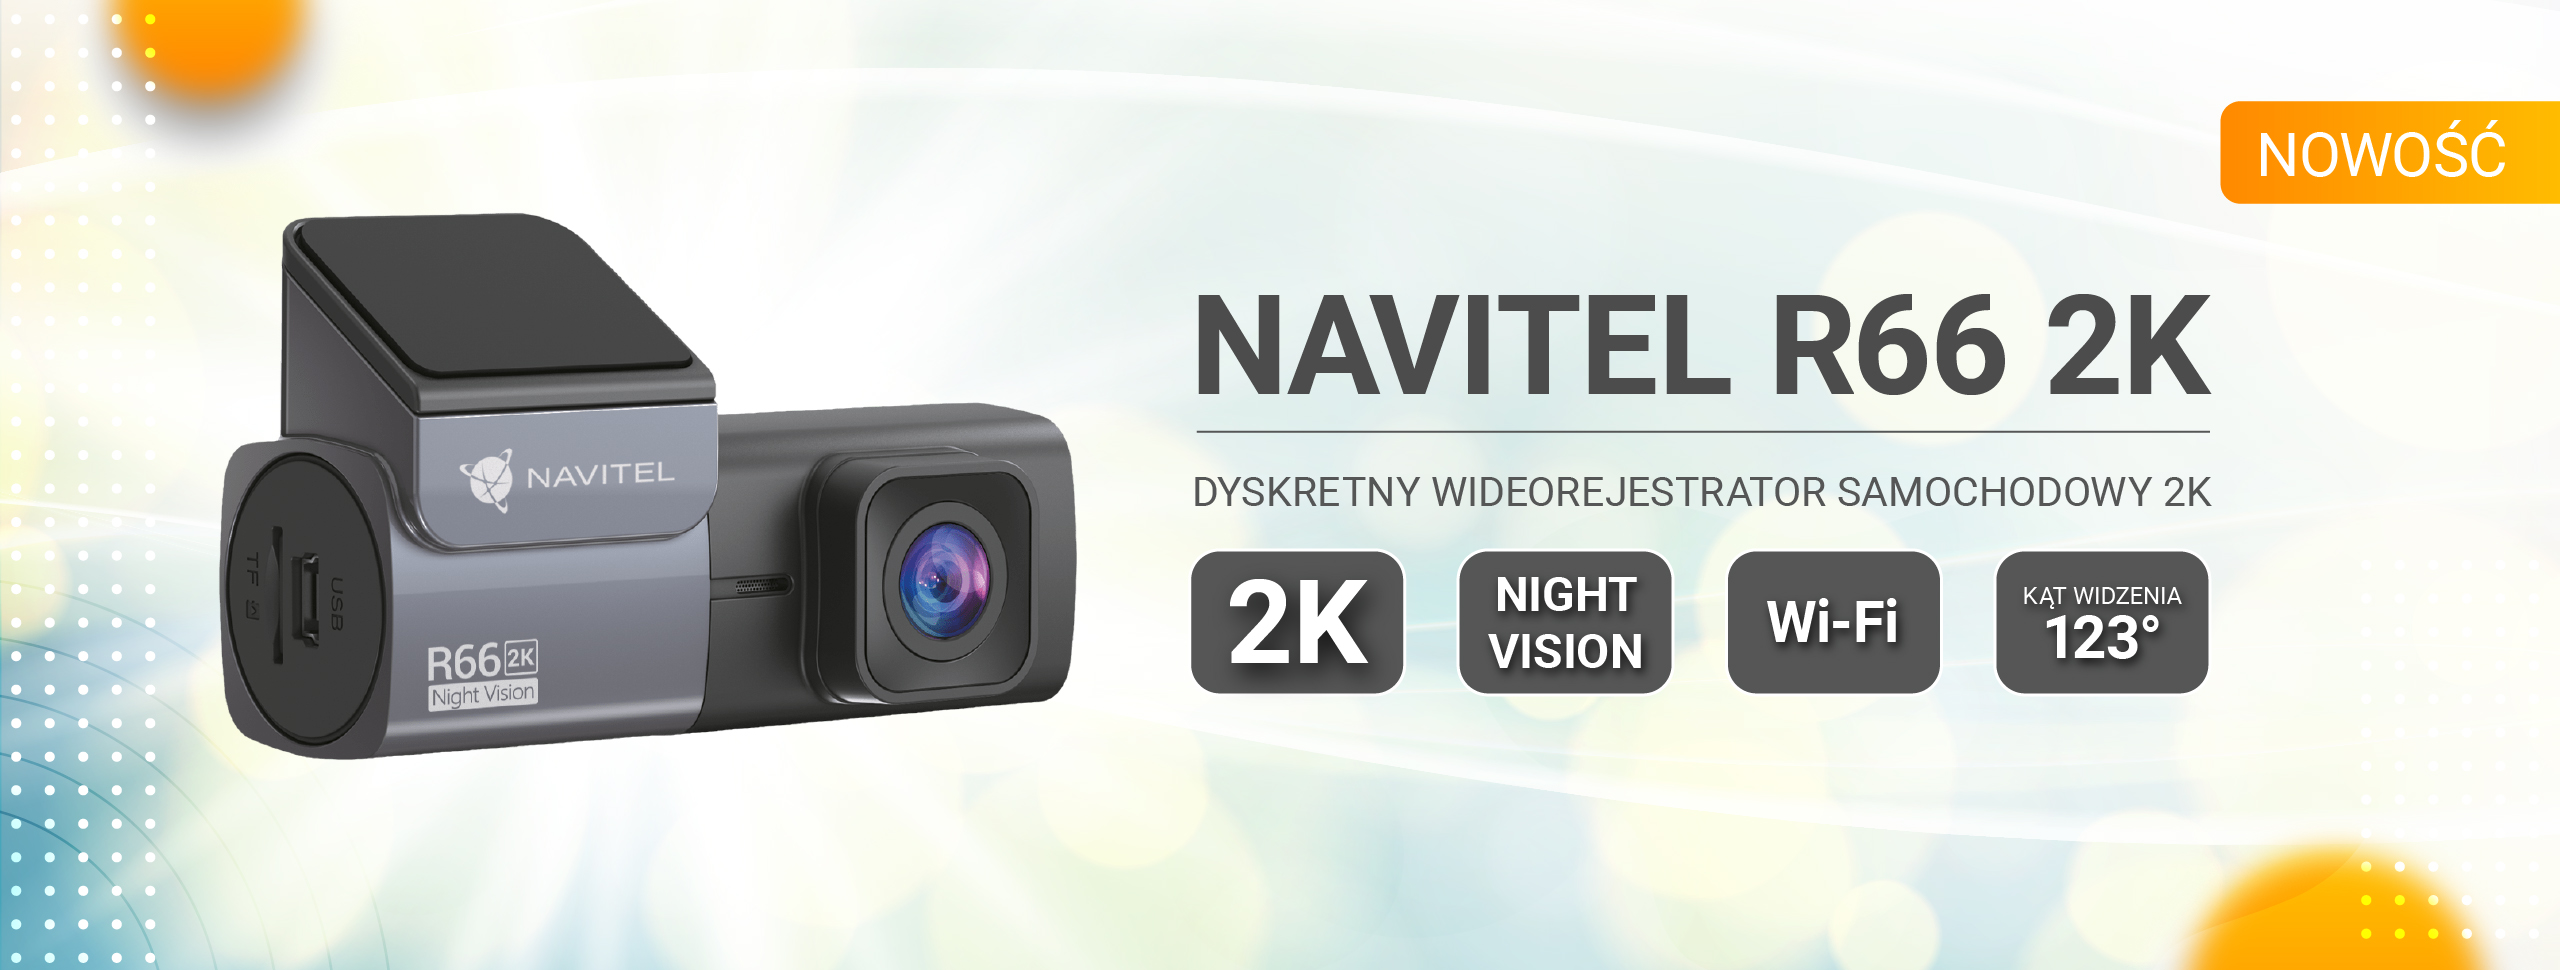 NAVITEL R66 2K – kamera samochodowa 2K sterowana za pomocą aplikacji mobilnej